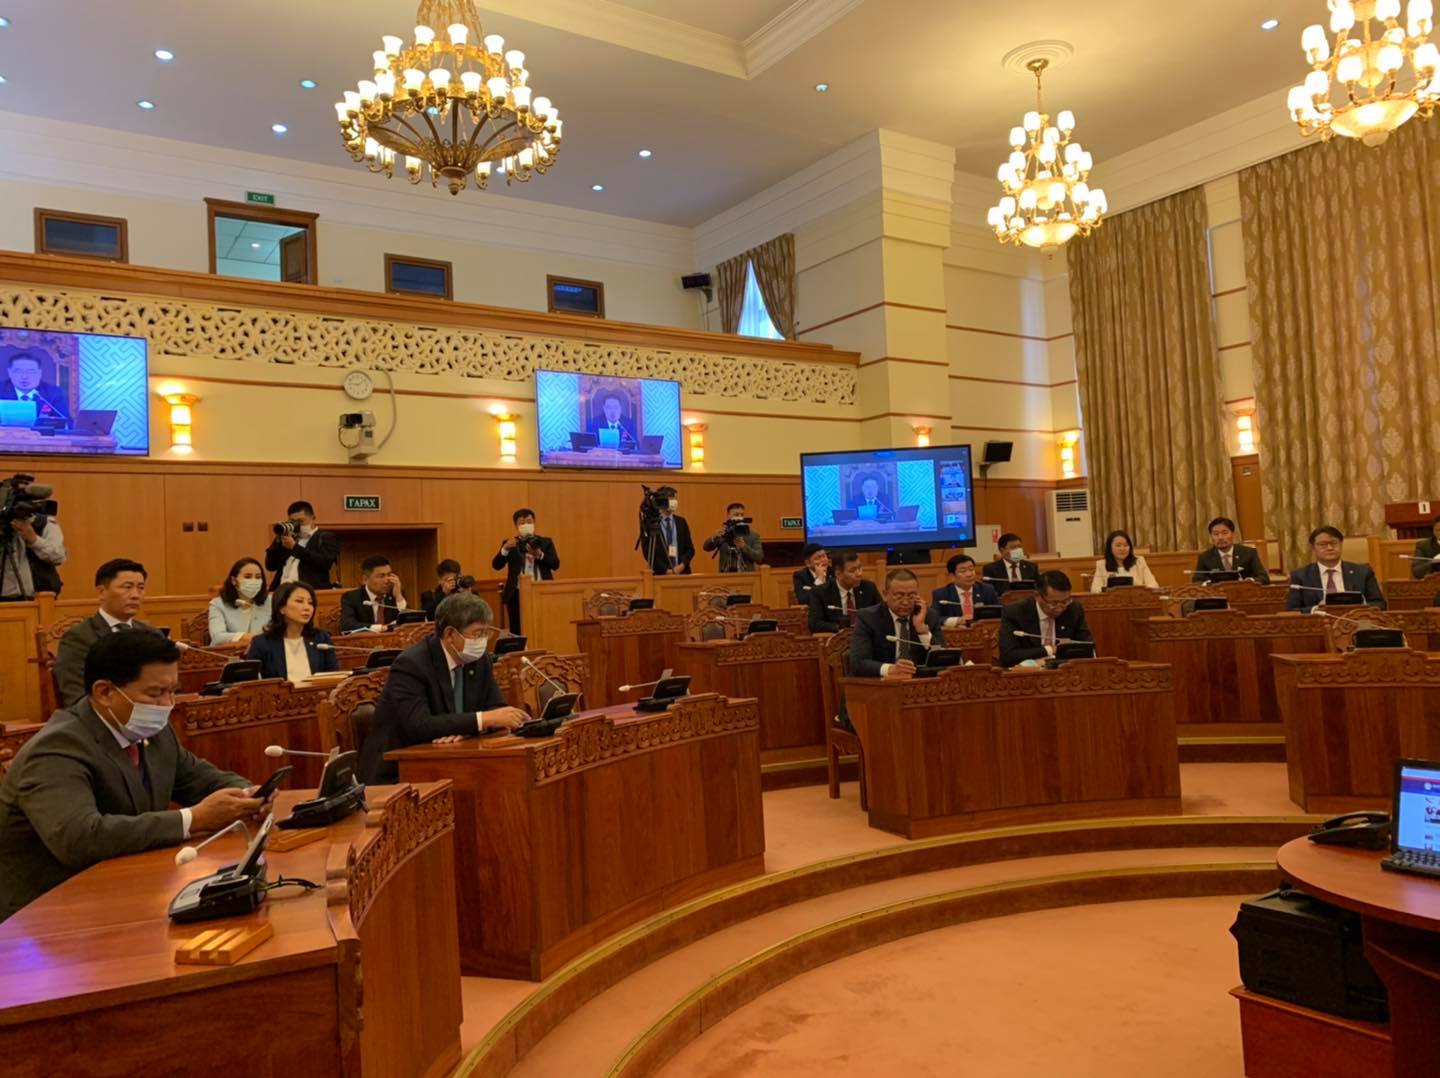 Монгол Улсын 2020 оны төсвийн тухай хуульд өөрчлөлт оруулах тухай хуулийн төслийг хэлэлцэж байна